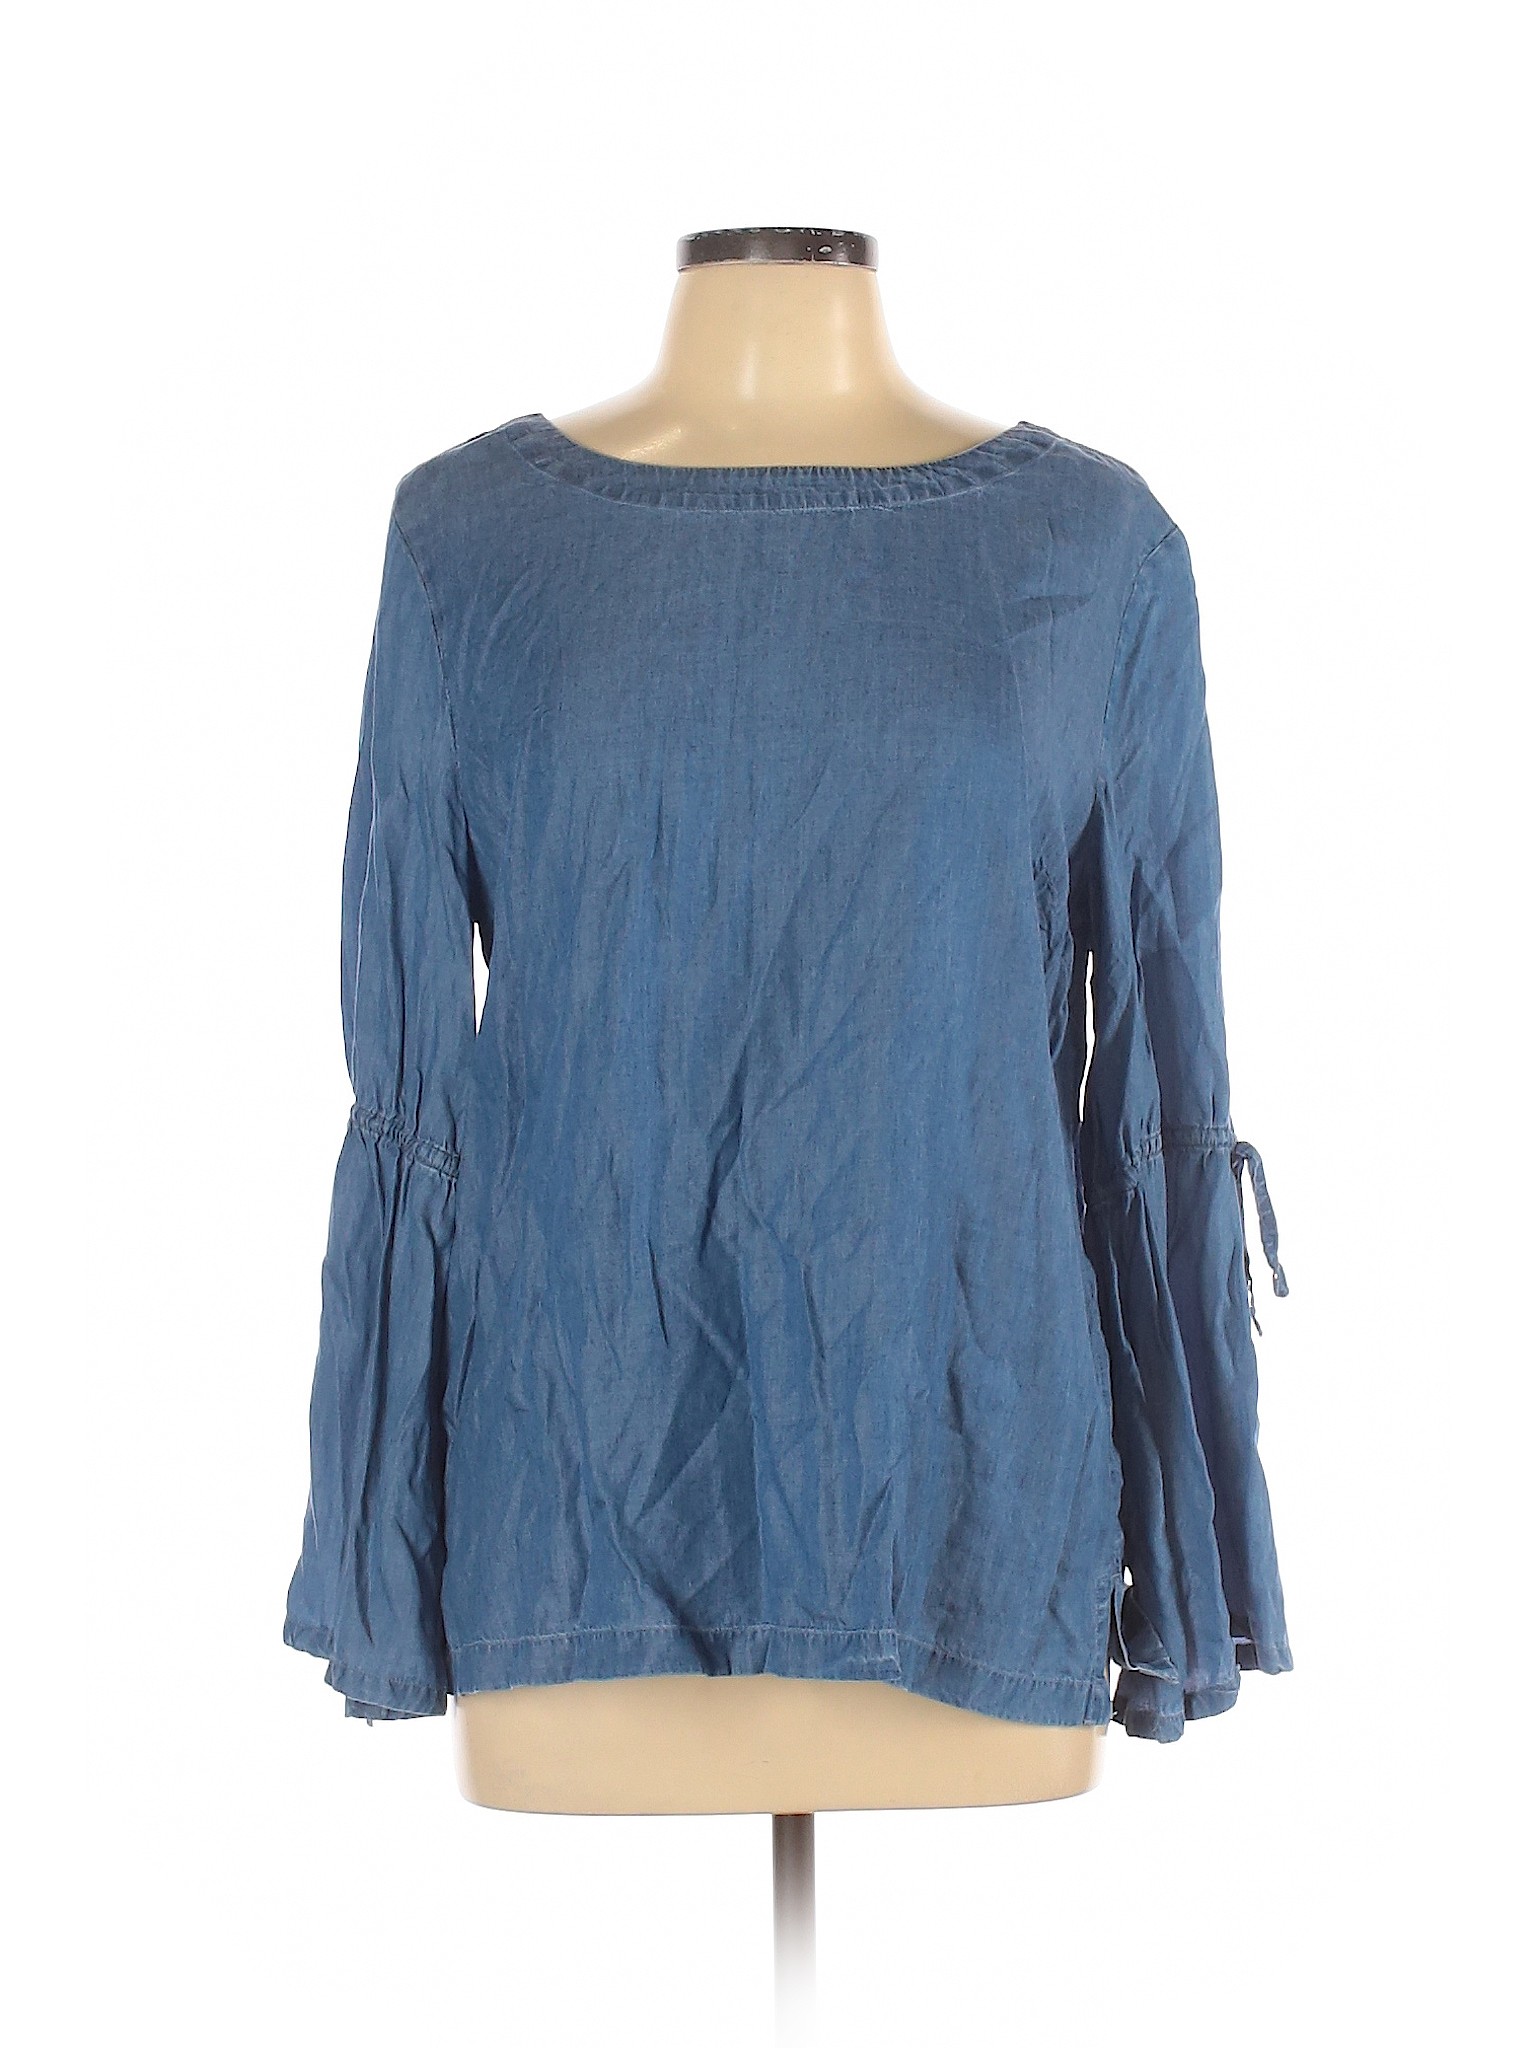 Ann Taylor LOFT Women Blue Long Sleeve Blouse L | eBay